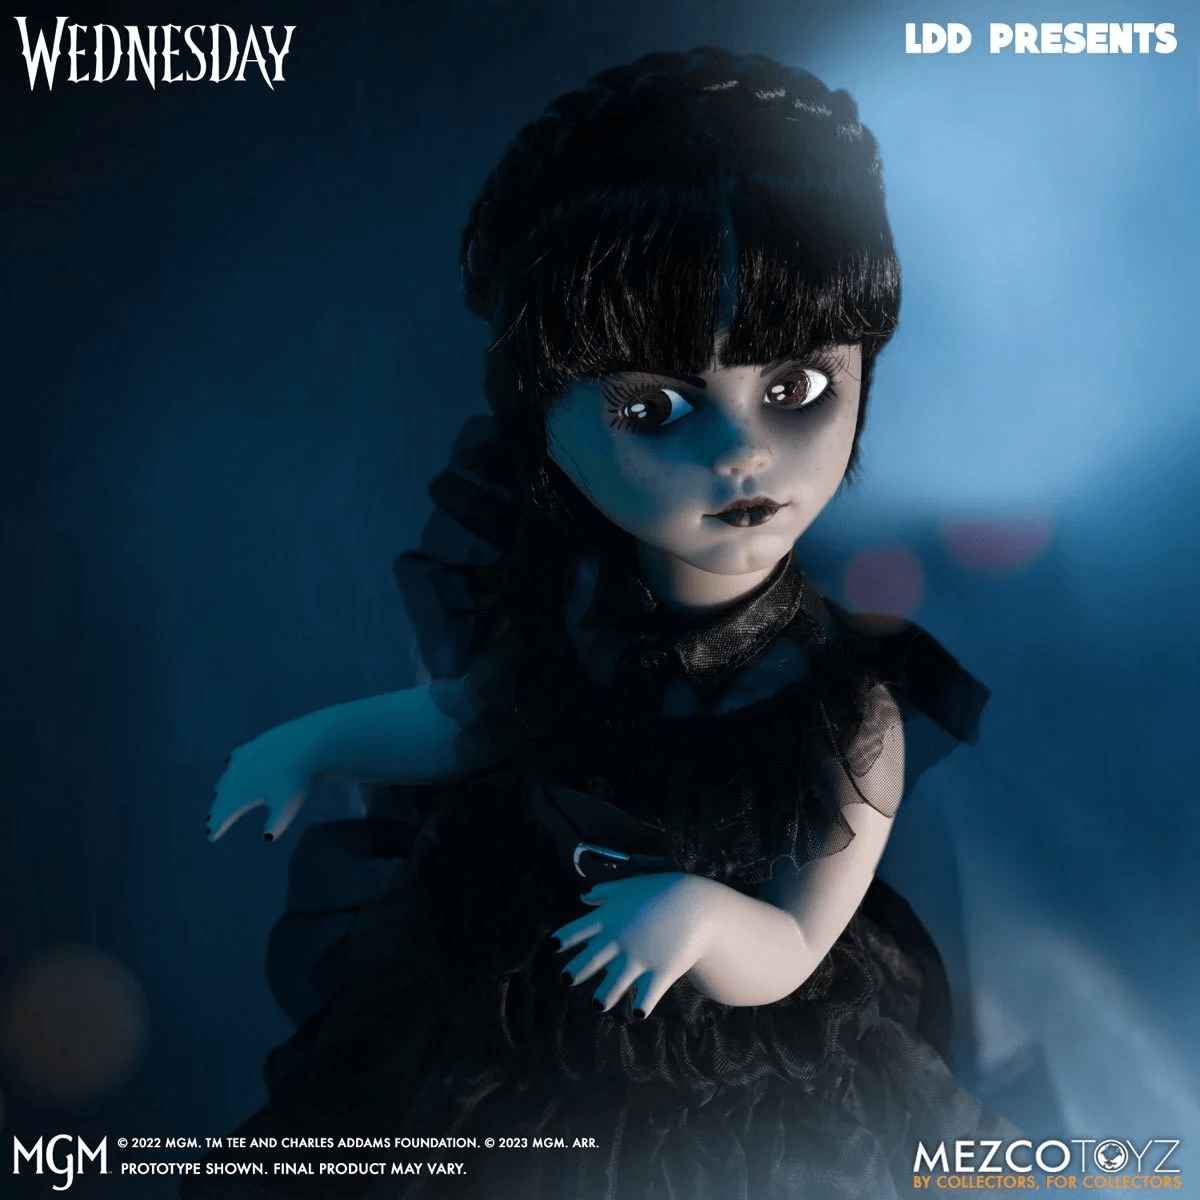 MEZ99674 LDD Presents - Dancing Wednesday Living Dead Doll - Mezco Toyz - Titan Pop Culture